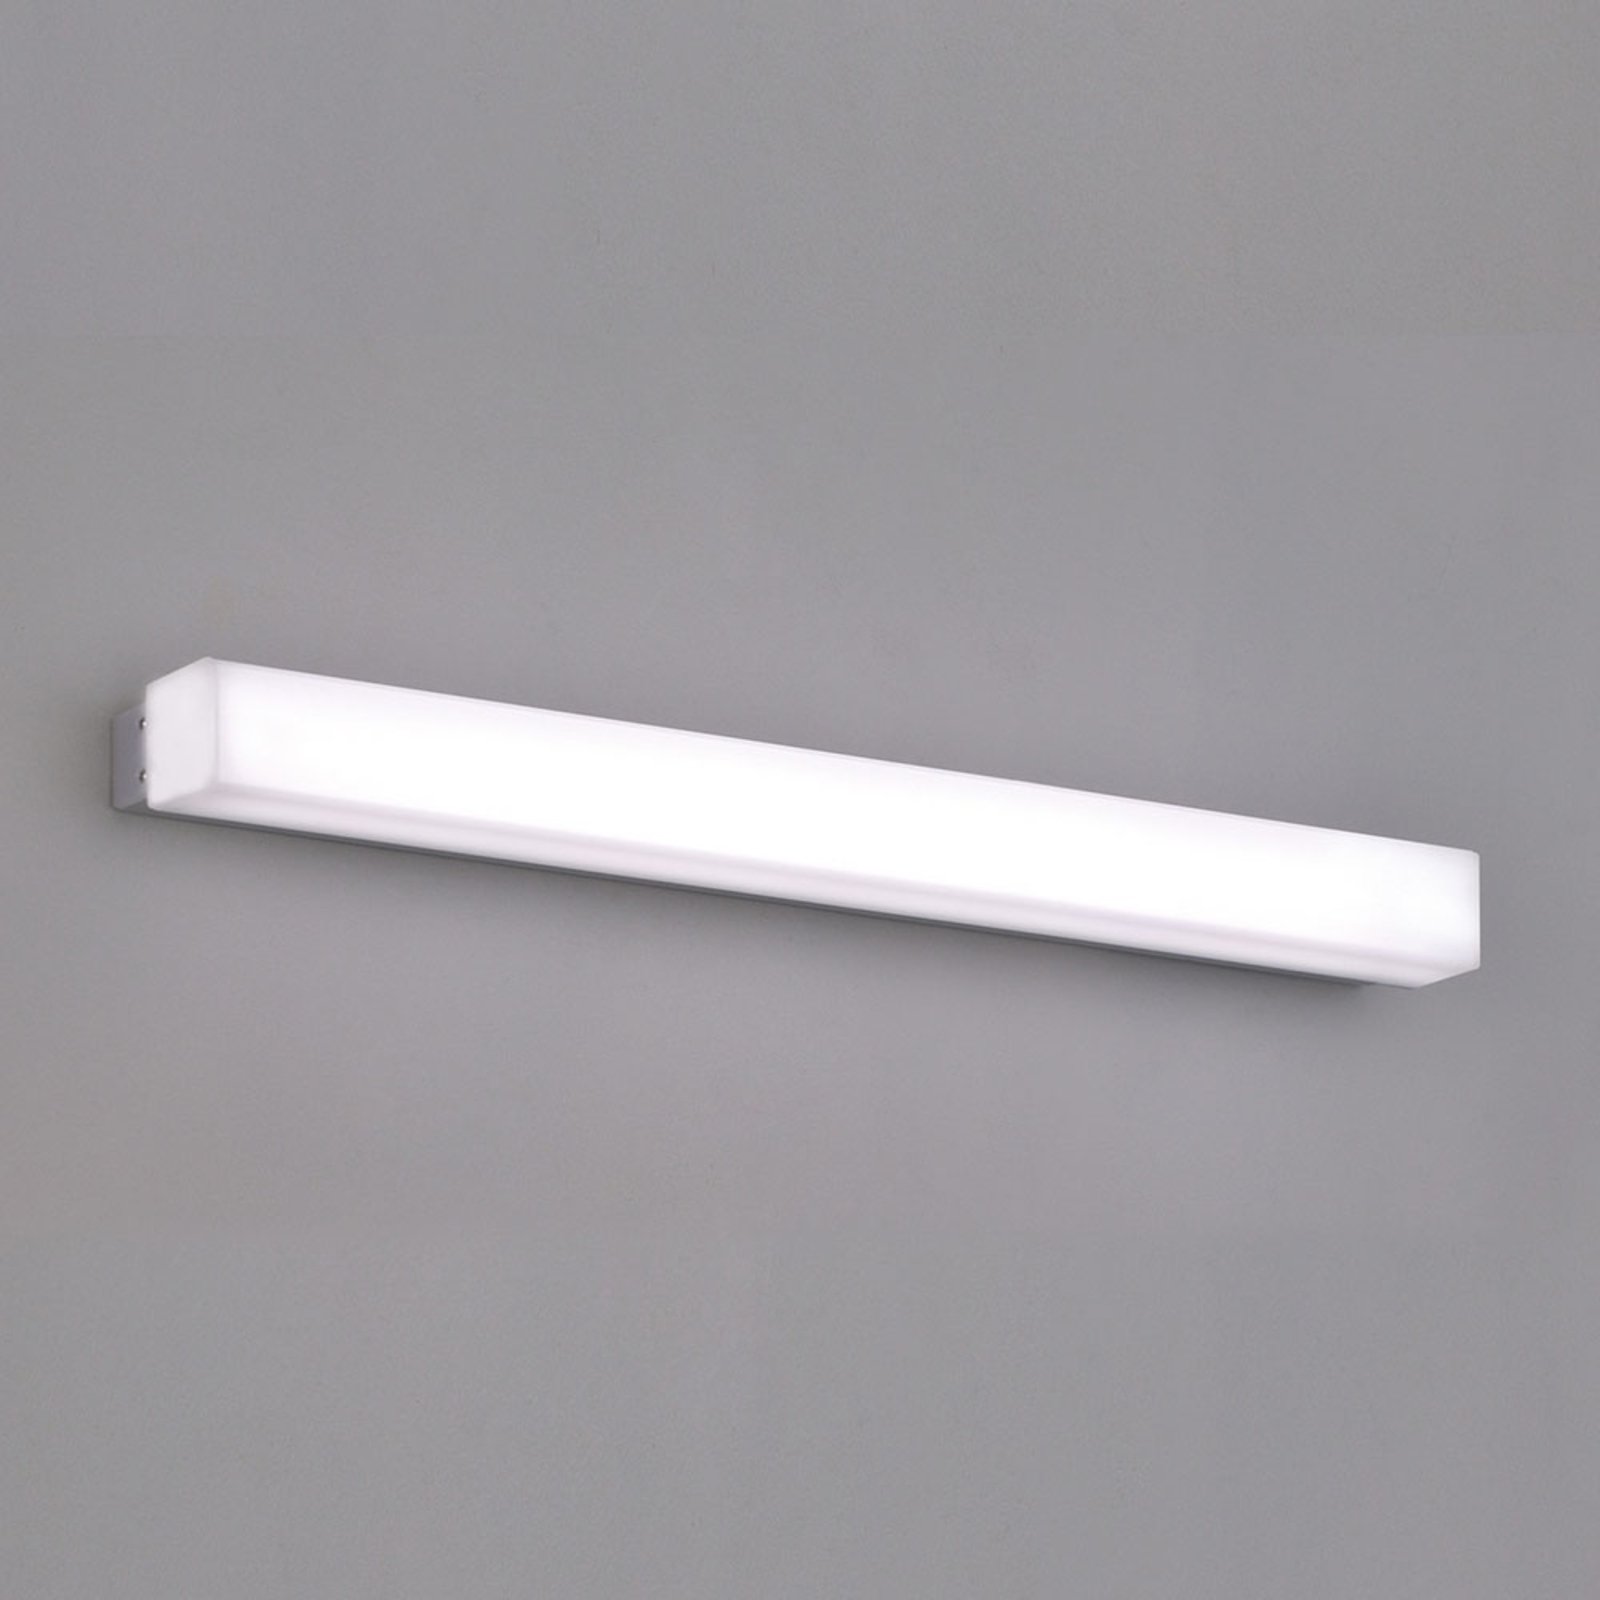 LED-vegglampe for baderom Box, 3 000 K, bredde 59 cm